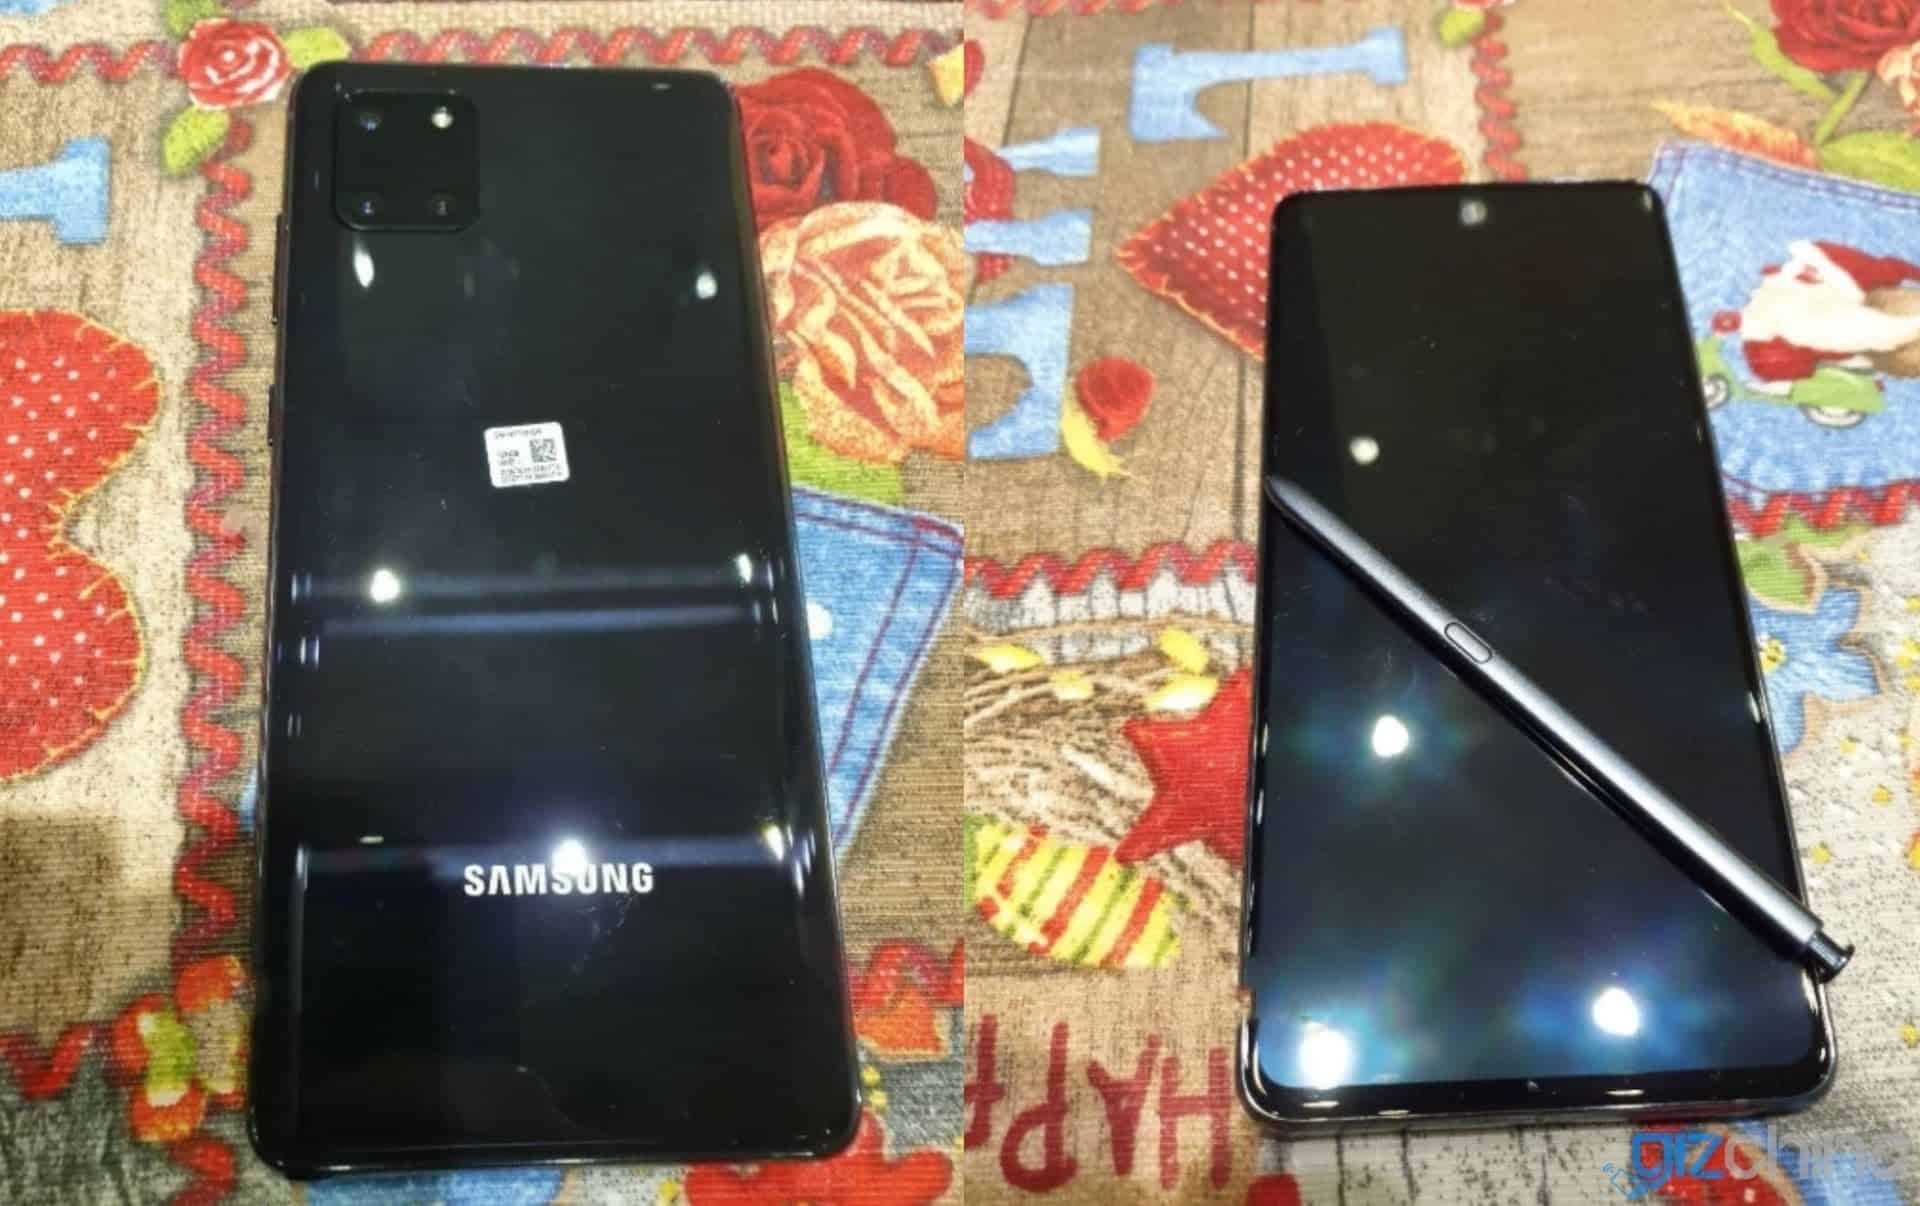 Samsung Galaxy Note10 Lite hands-on photos leak - Neowin